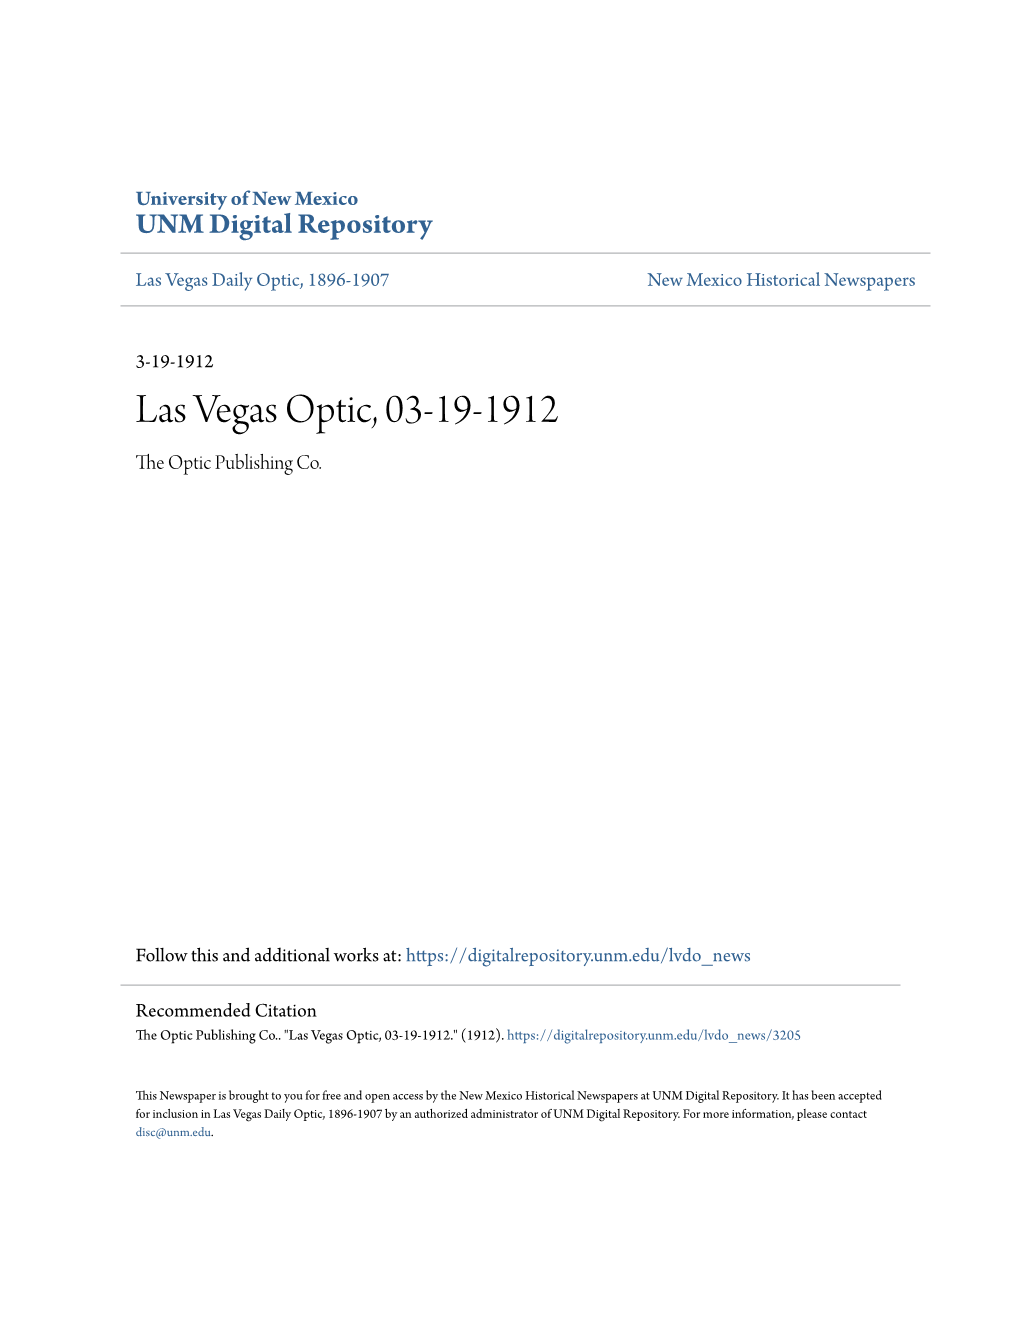 Las Vegas Optic, 03-19-1912 the Optic Publishing Co